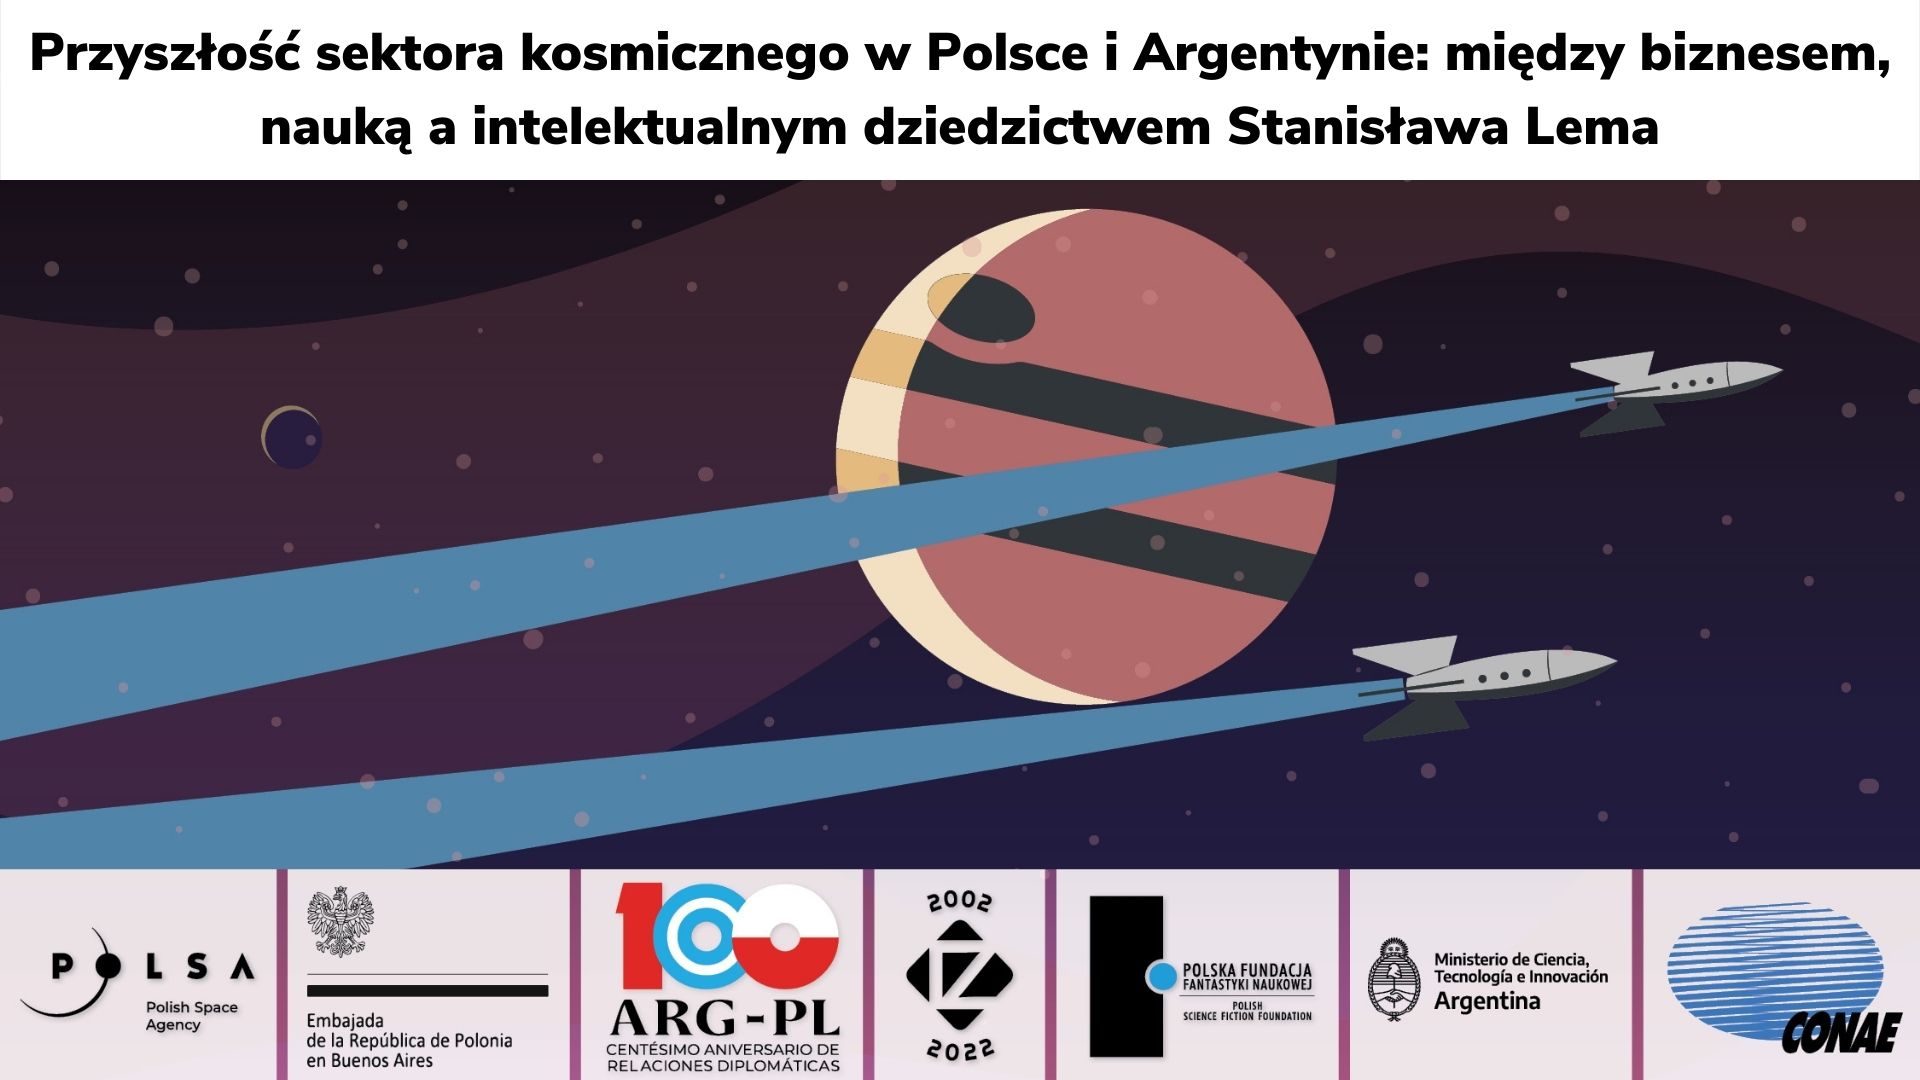 Seminarium „Przyszłość sektora kosmicznego w Polsce i Argentynie” - podsumowanie